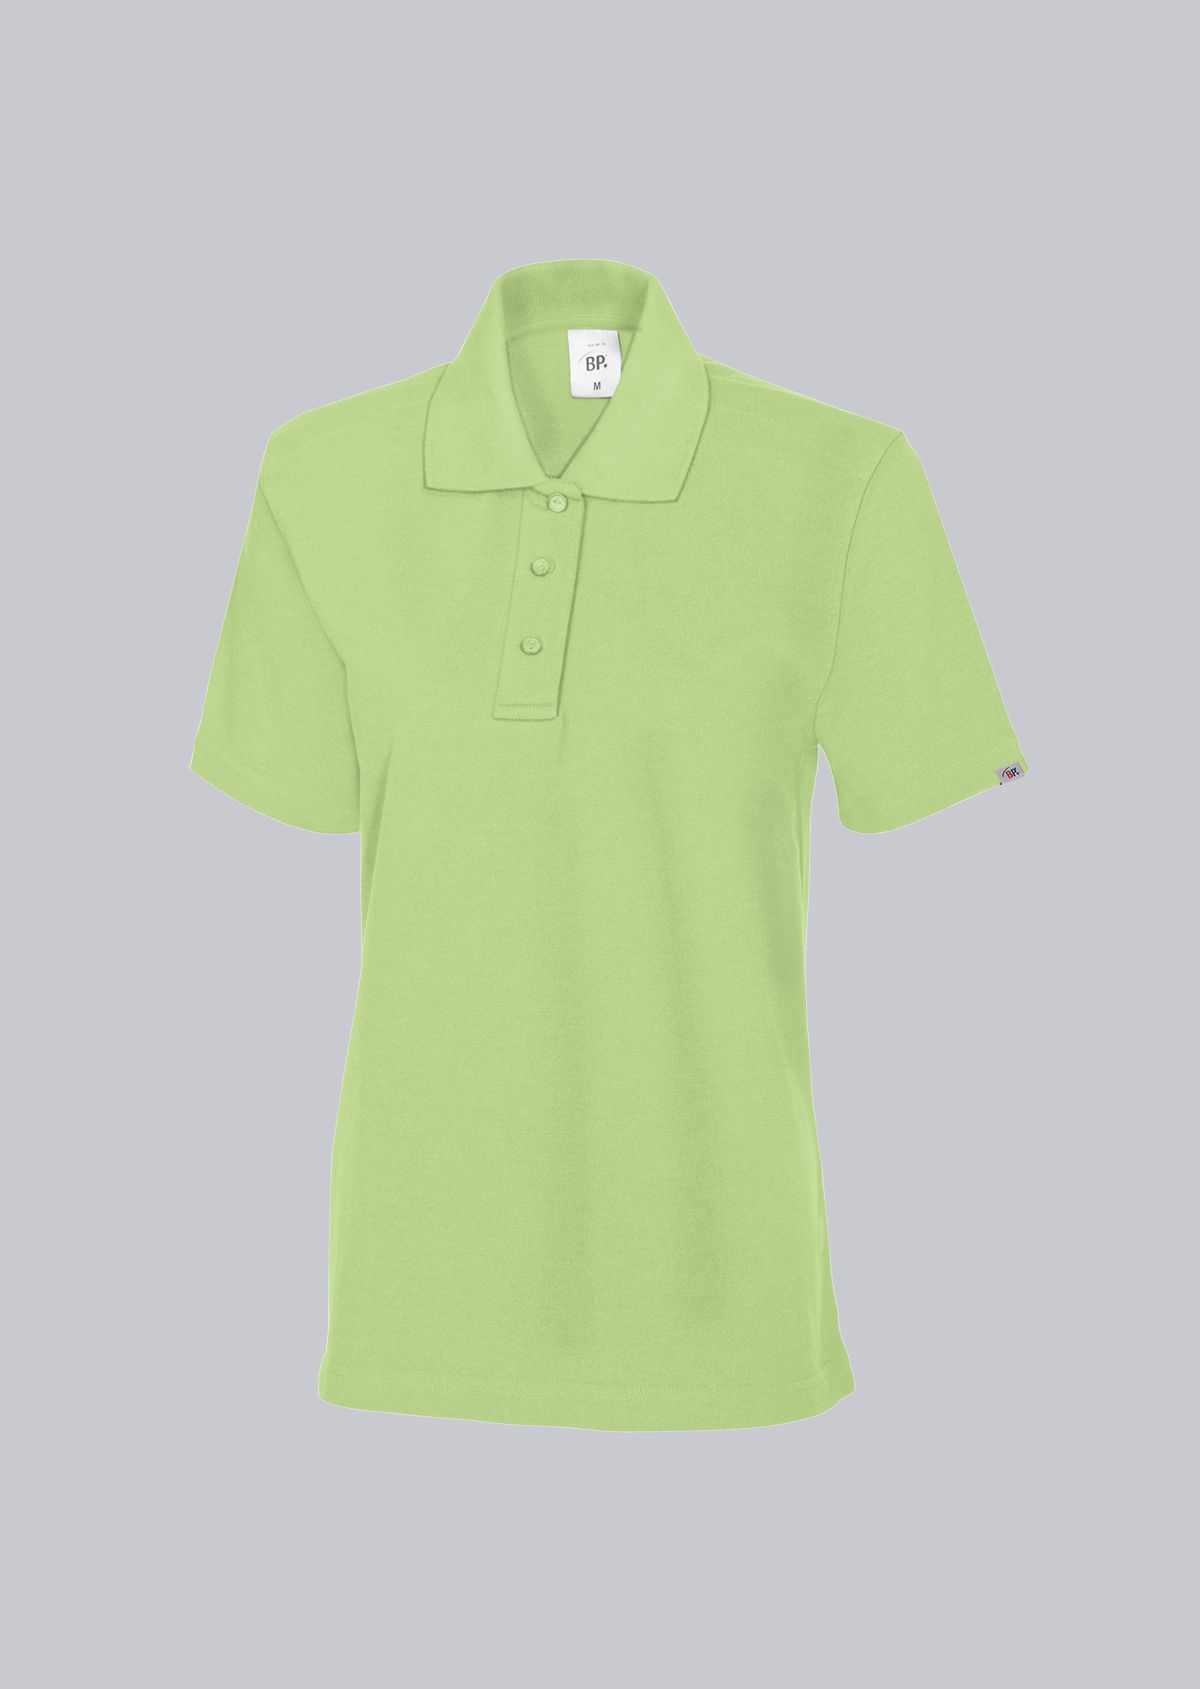 BP® Damen-Poloshirt